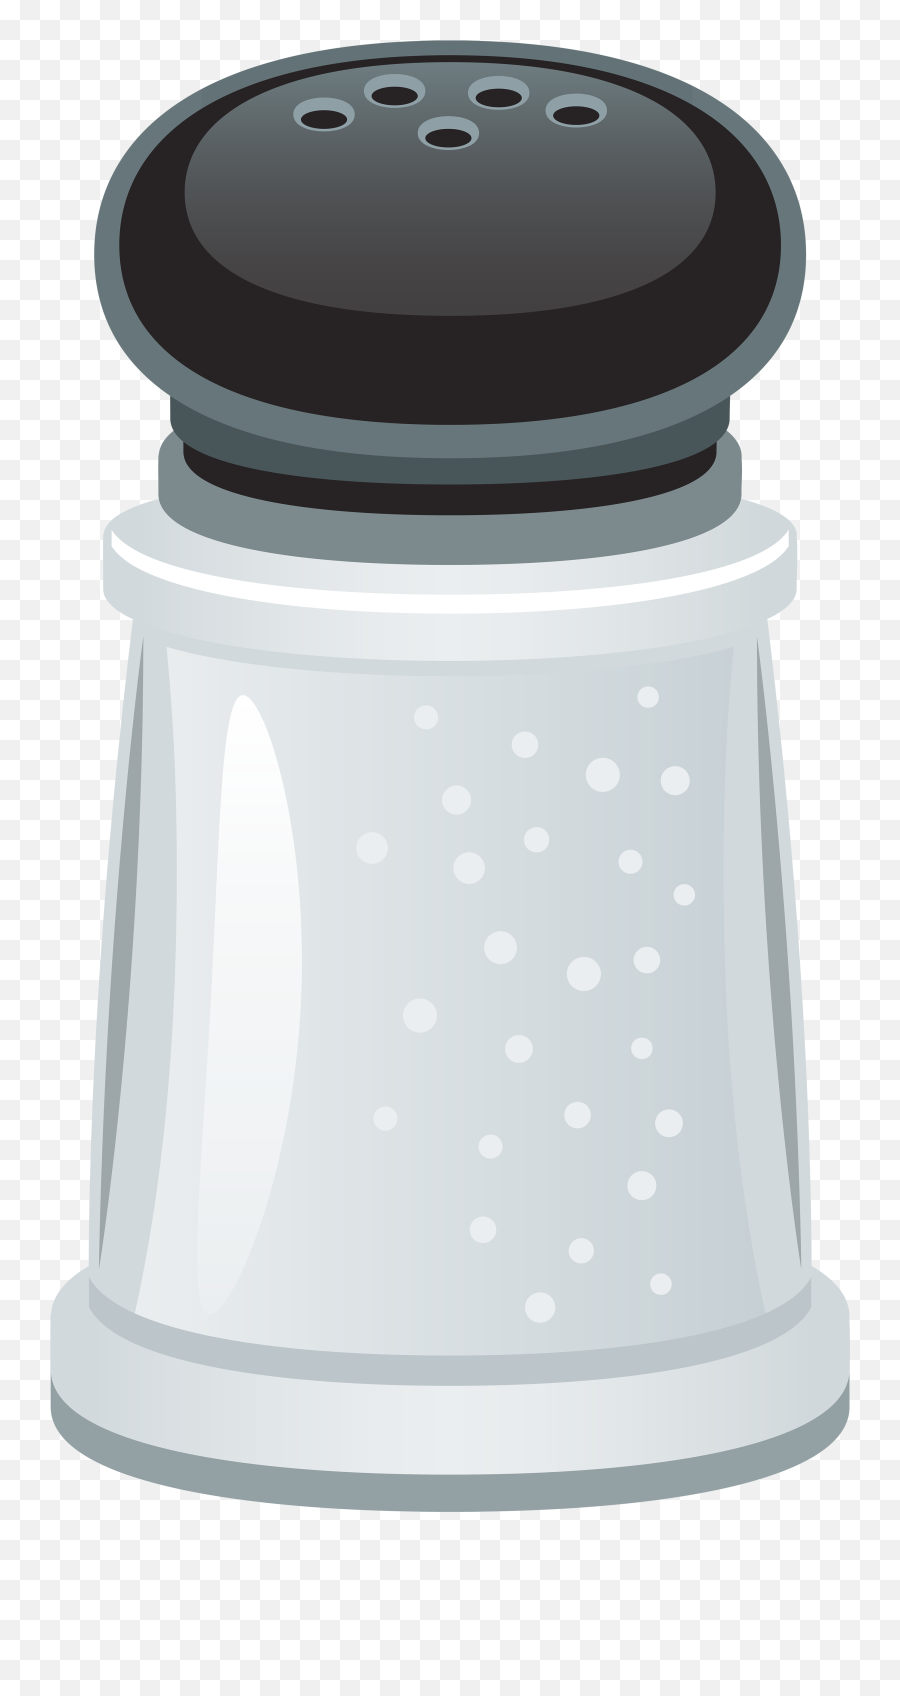 Salt Png Pic - Transparent Salt Shaker Clipart,Salt Transparent Background